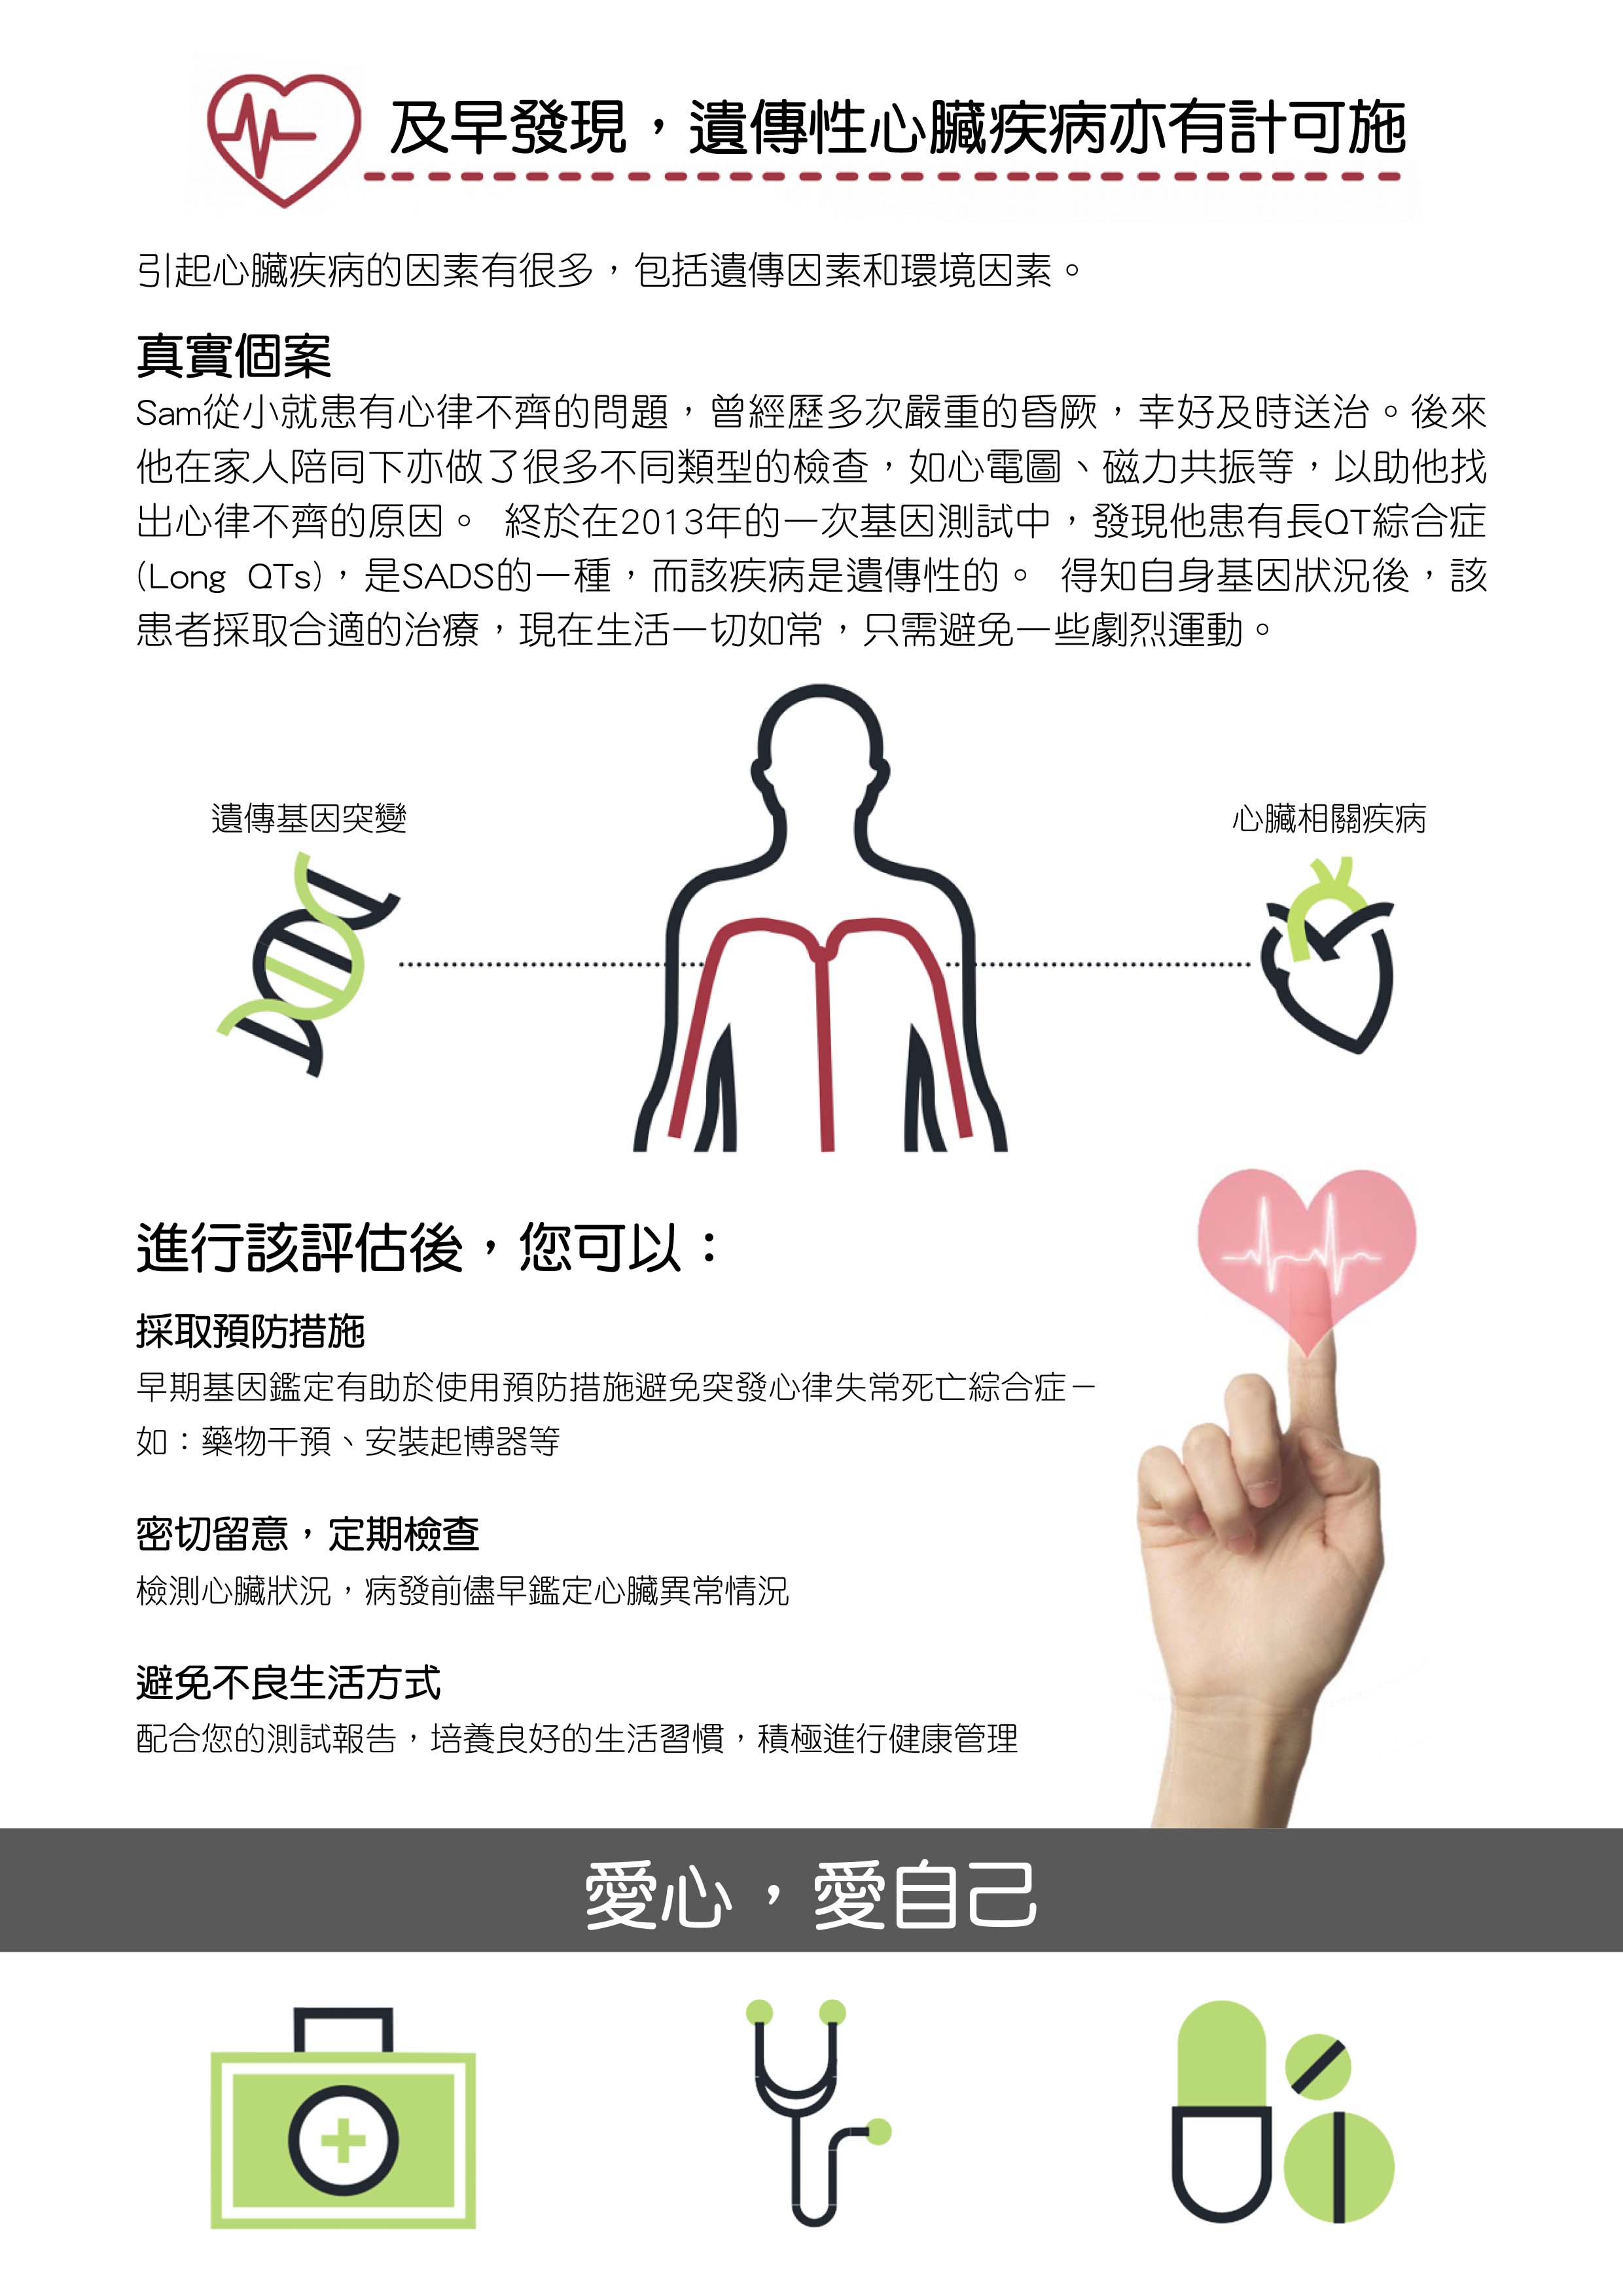 cardiac-risk-assessment-test-3.jpg